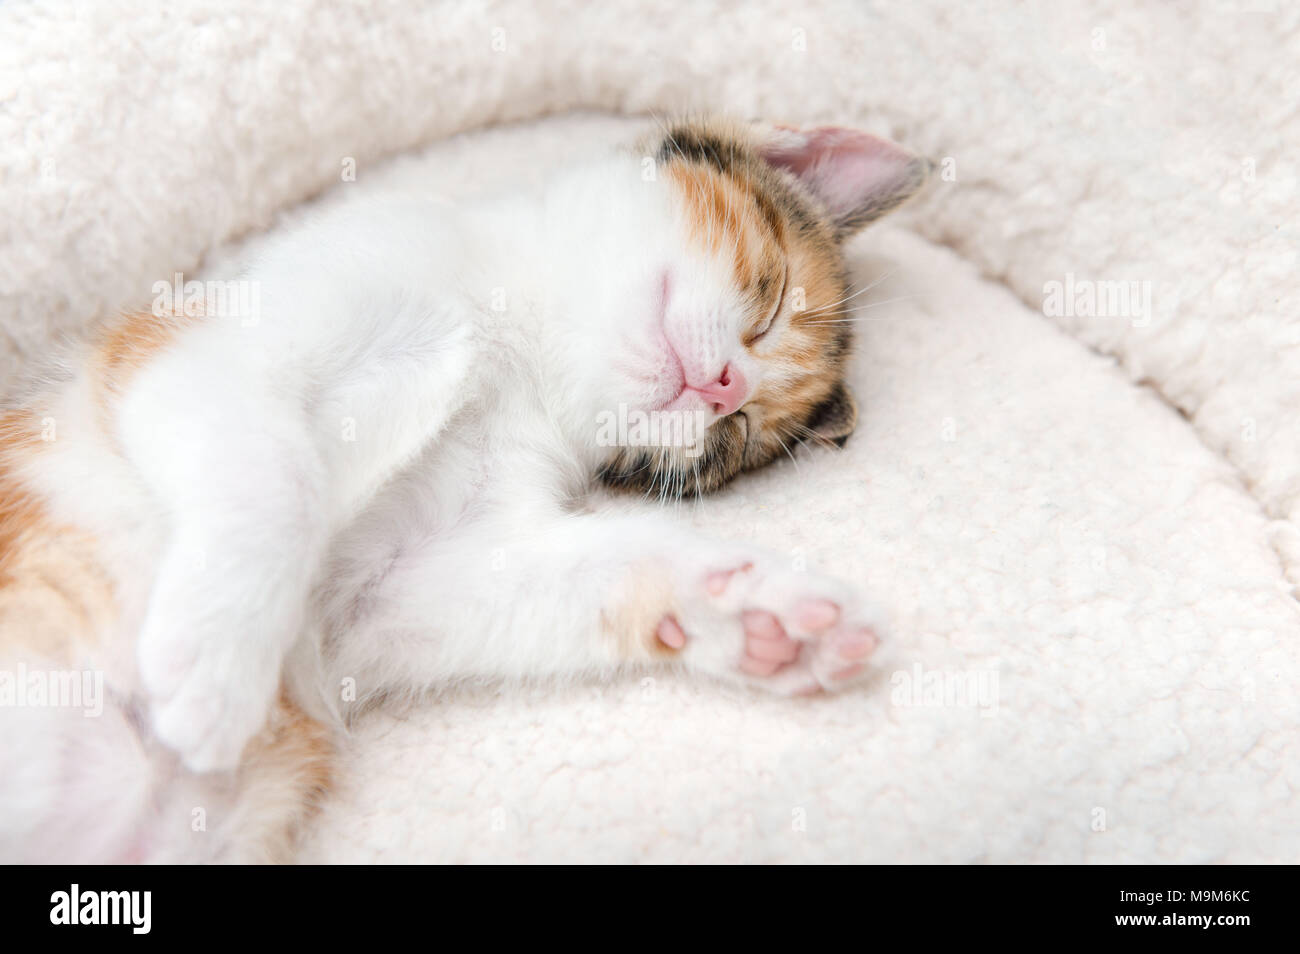 Single cute tired little kitten sleeping in a furry basket Stock Photo